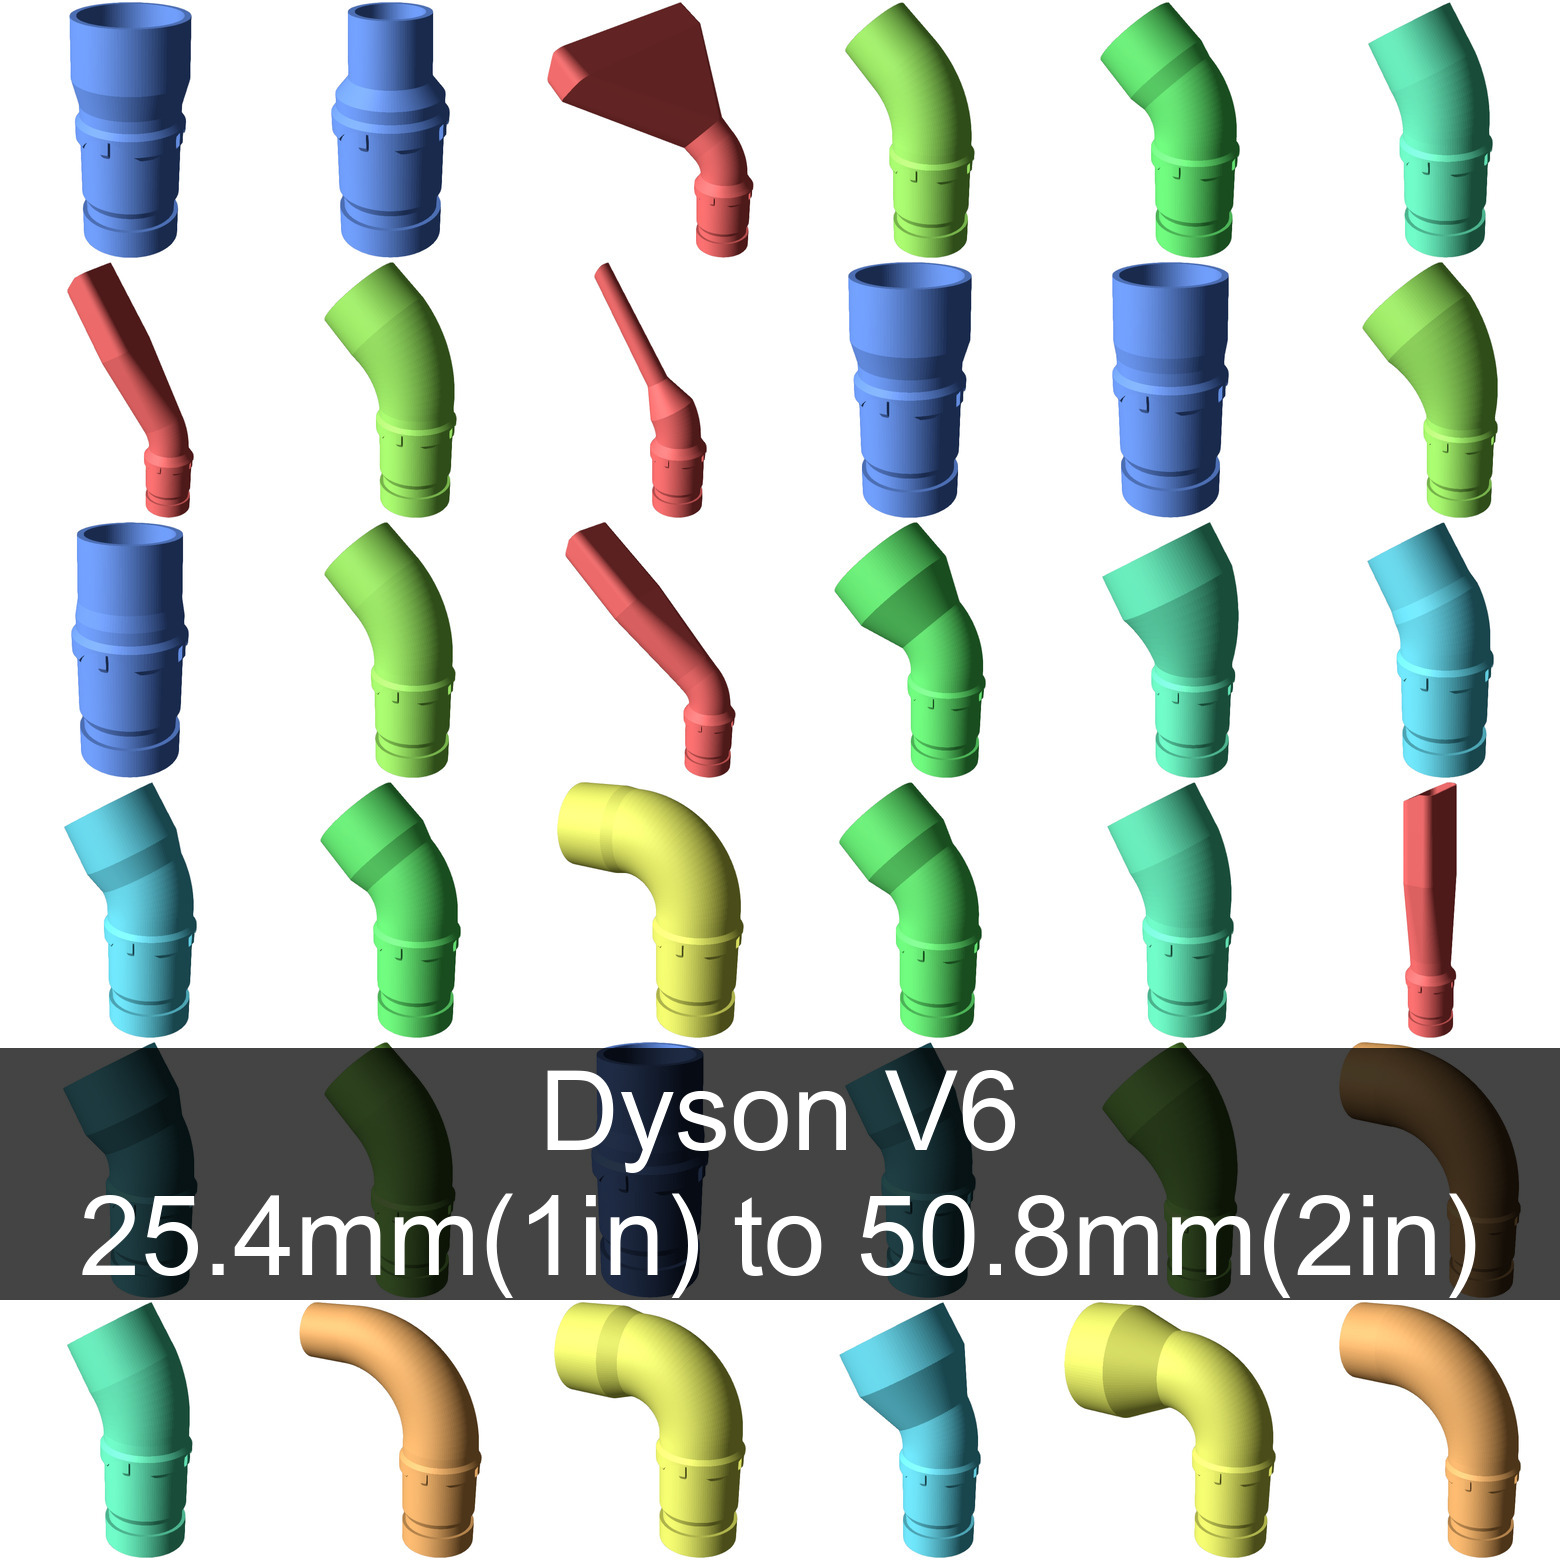 Dyson V6 hose attachements